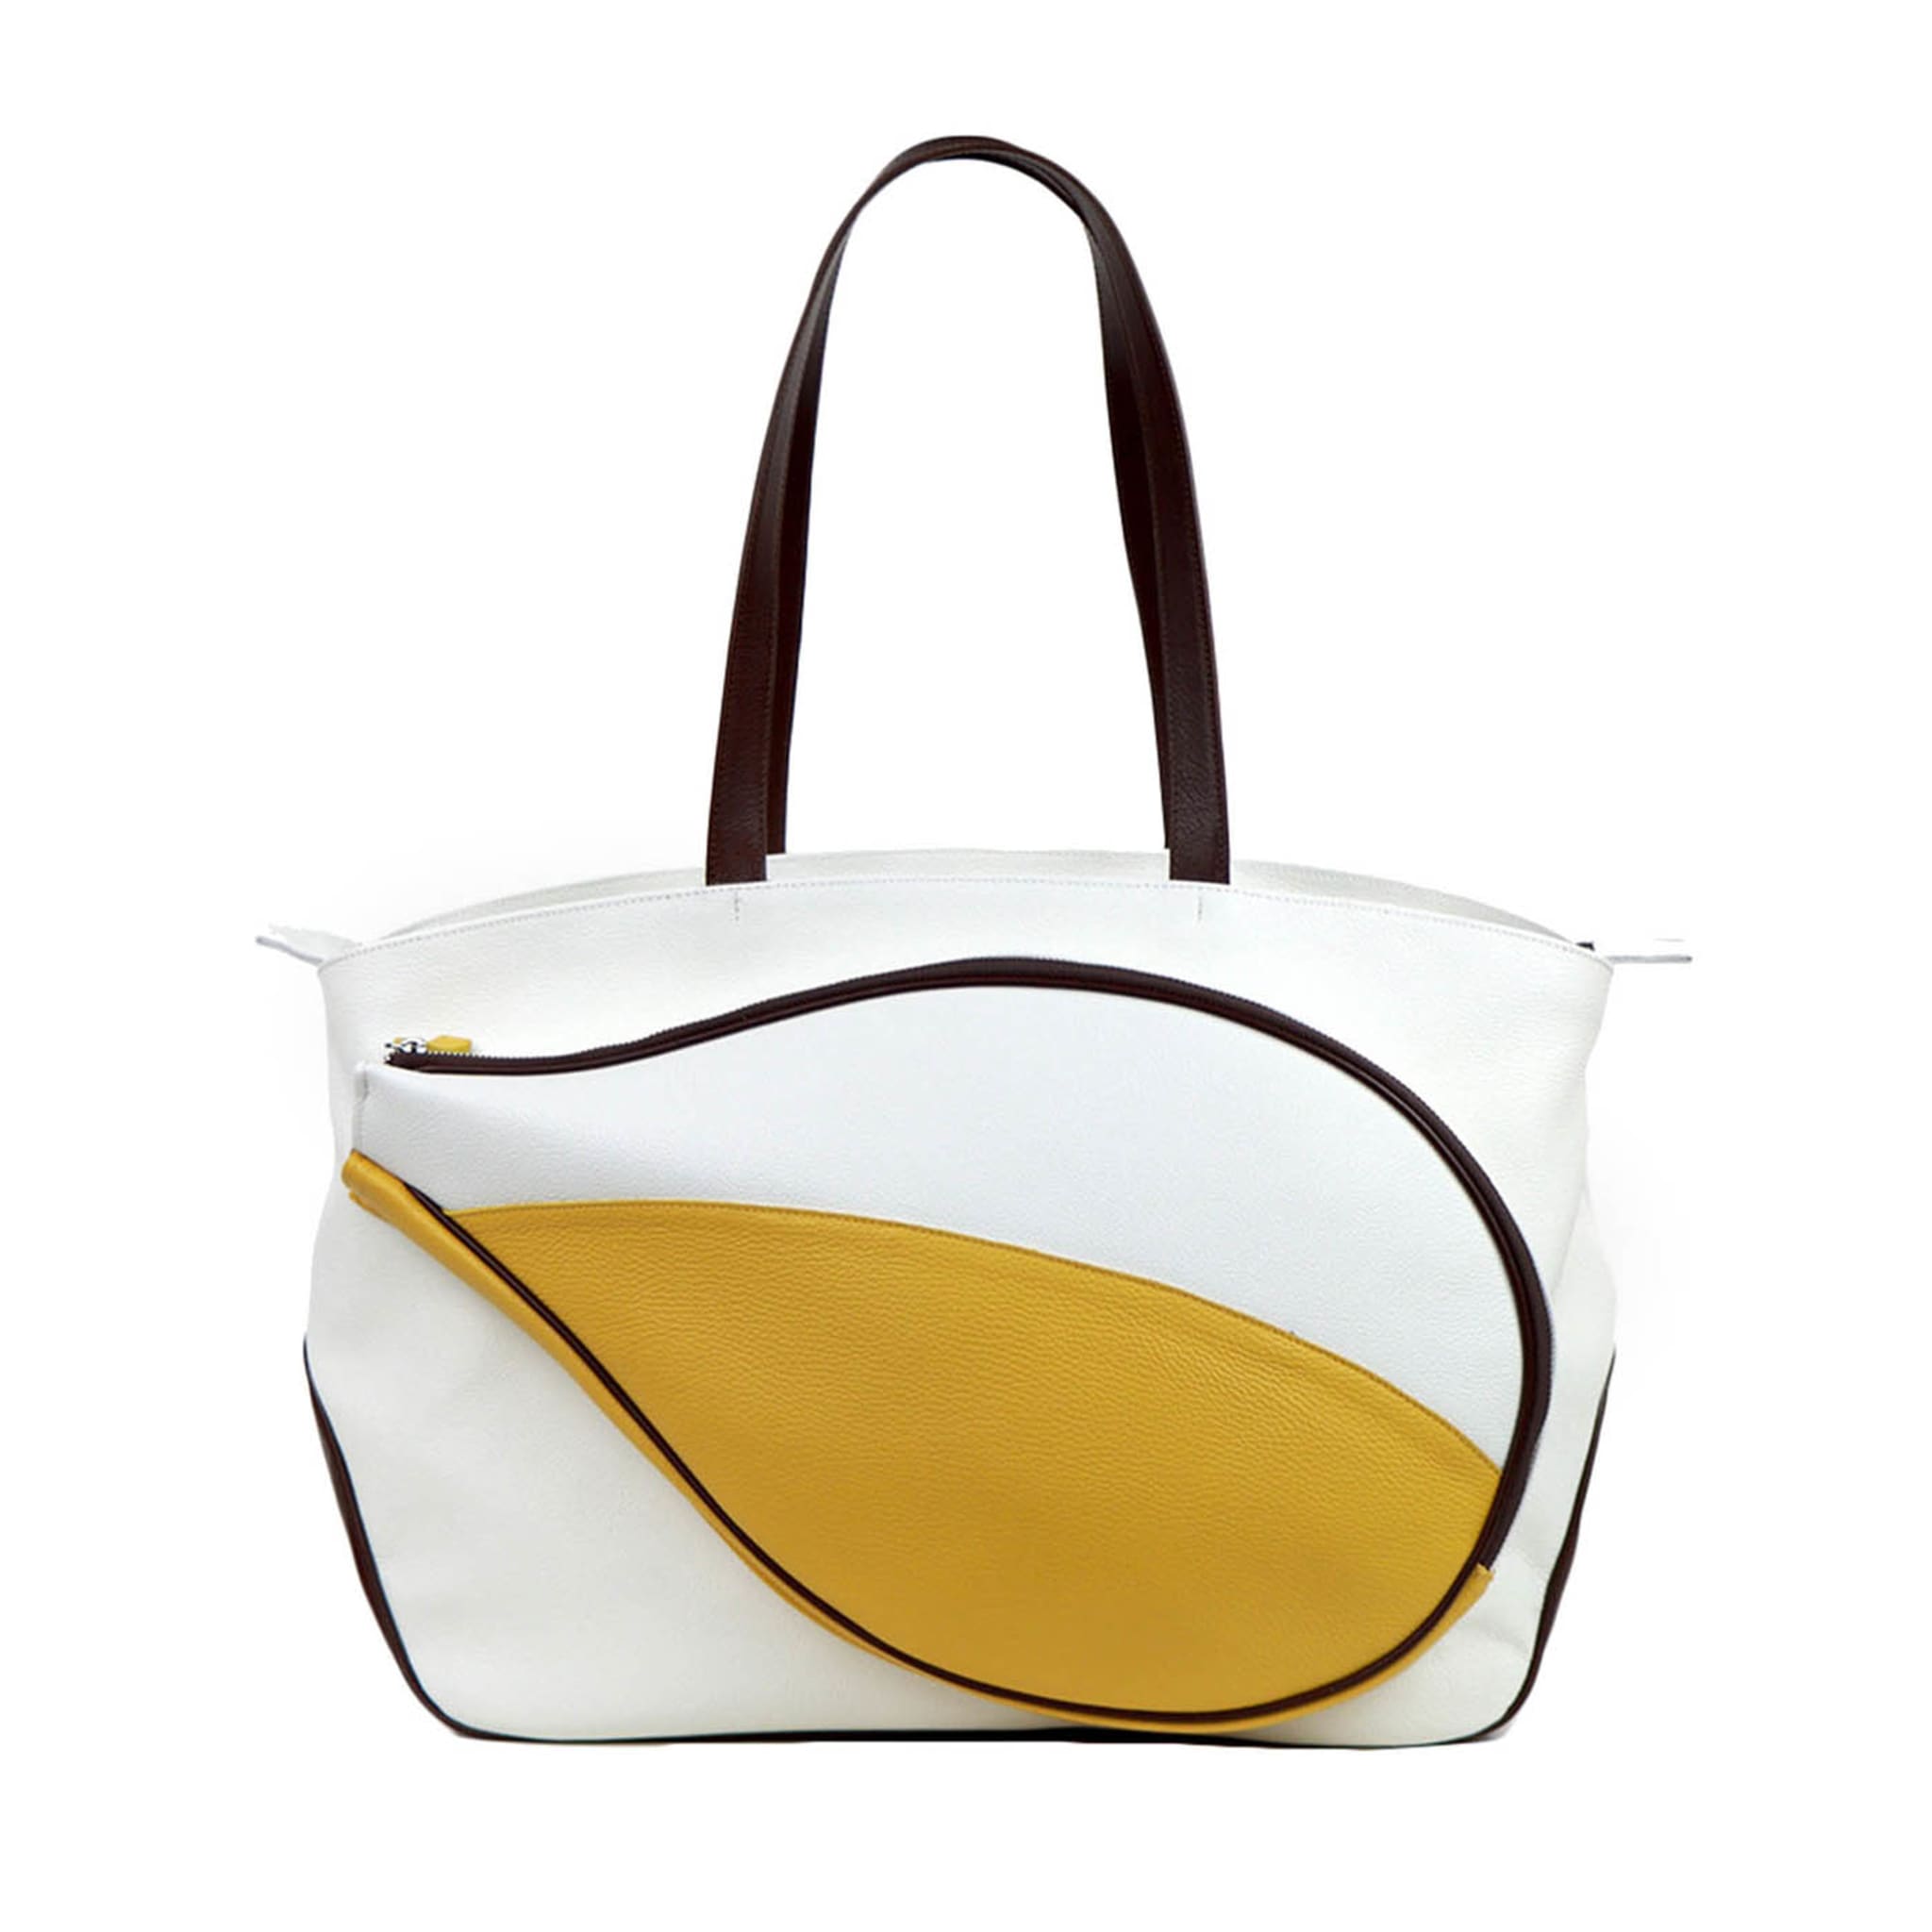 Sporttasche weiß/gelb/braun mit Tasche in Form eines Tennisschlägers - Hauptansicht